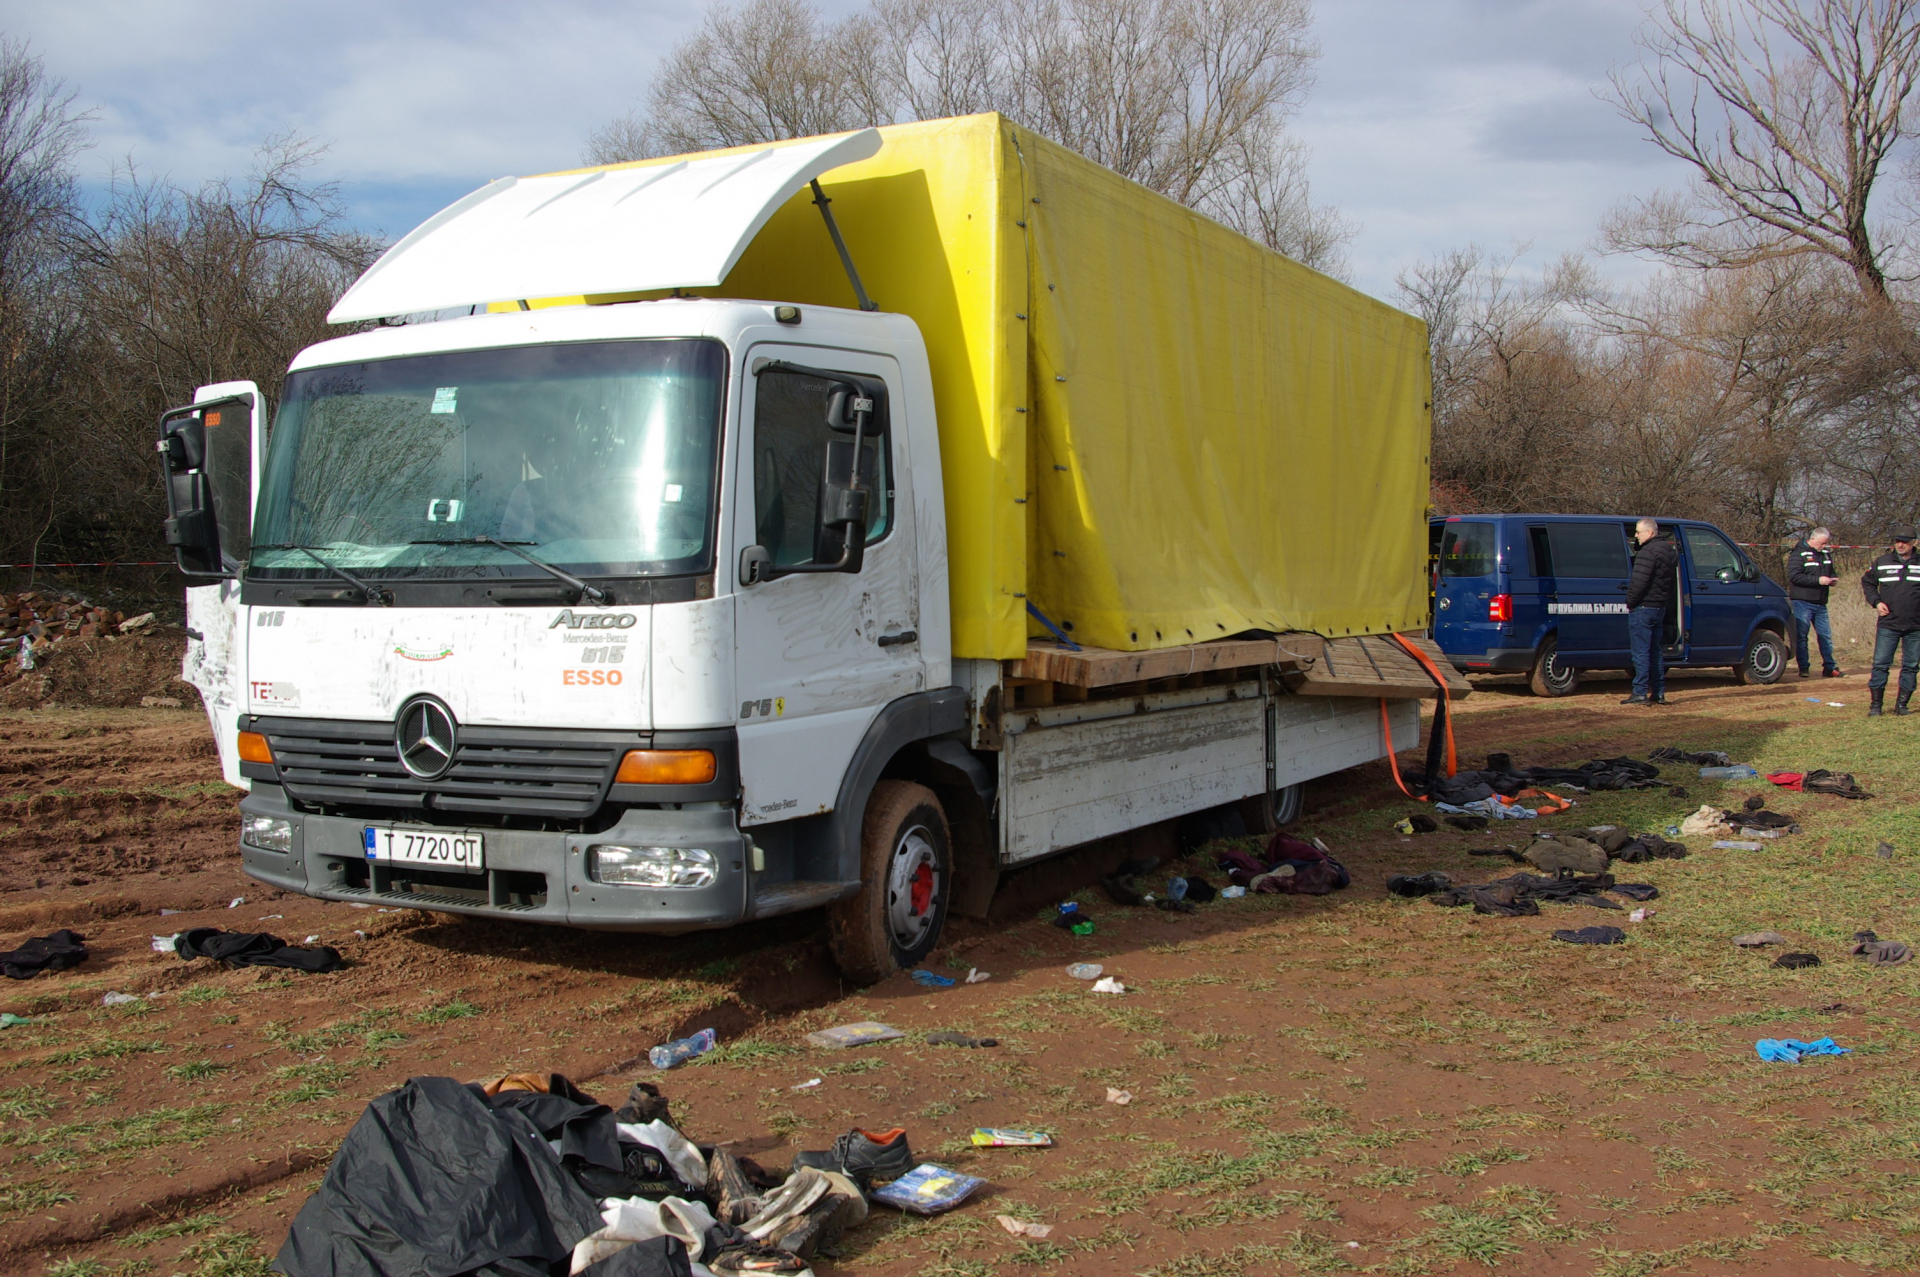 Нови зловещи СНИМКИ от камиона ковчег с натъпкани мигранти, открит край София